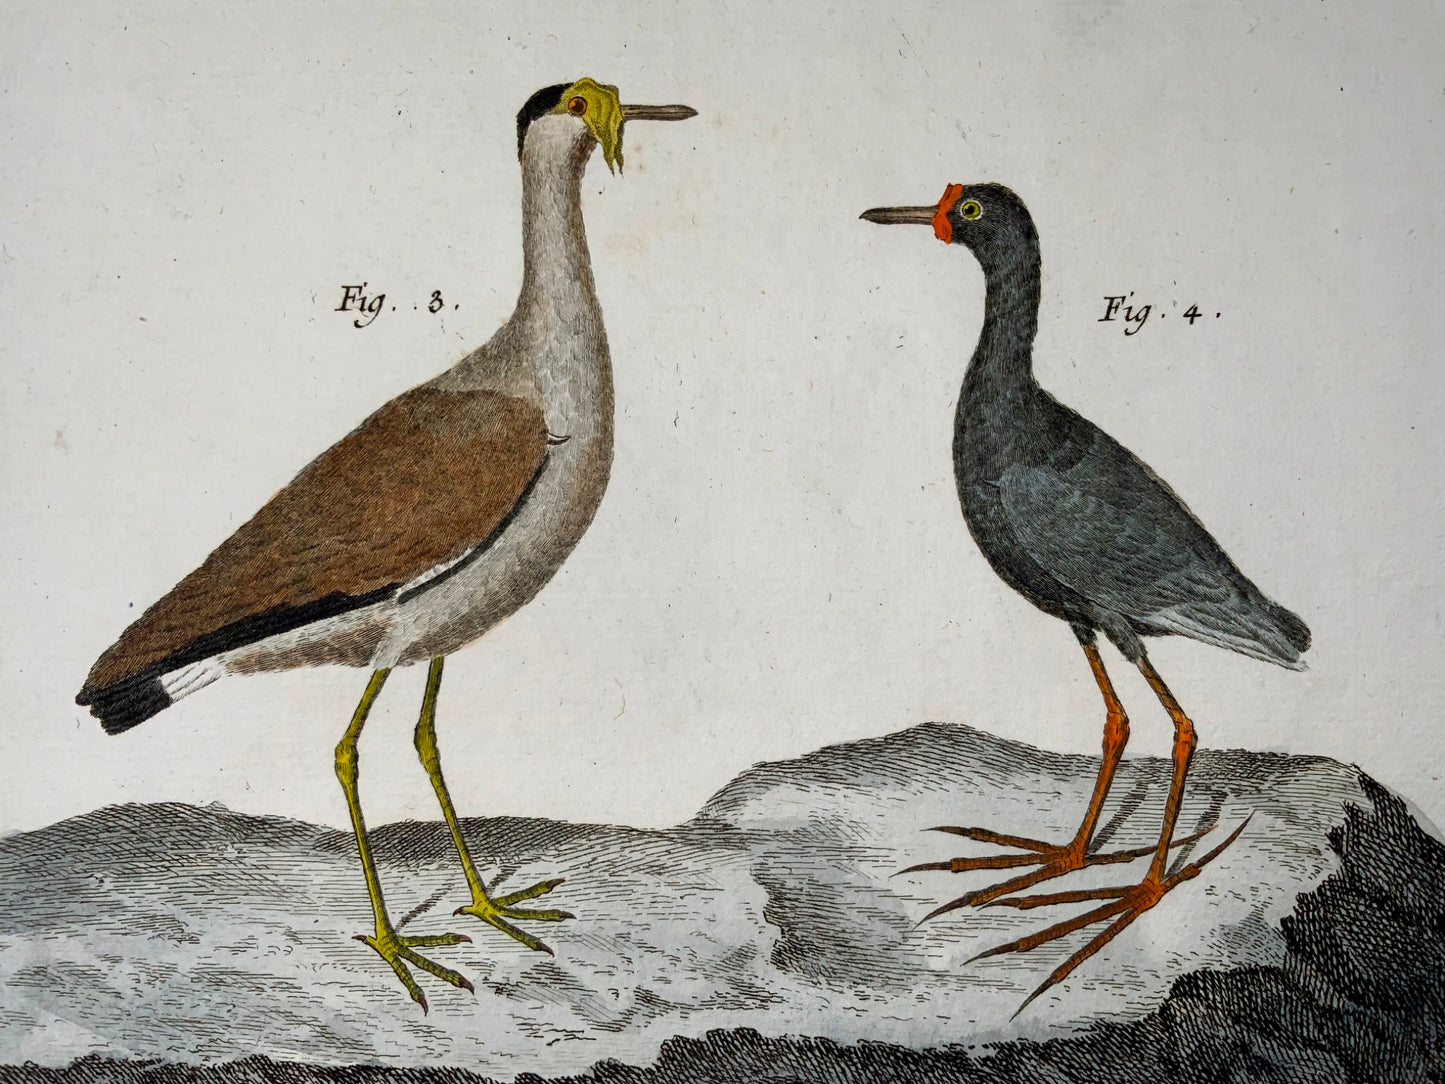 1751 Lawing, Jacana, Plover, ornitologia, Martinet, foglio grande, colore a mano